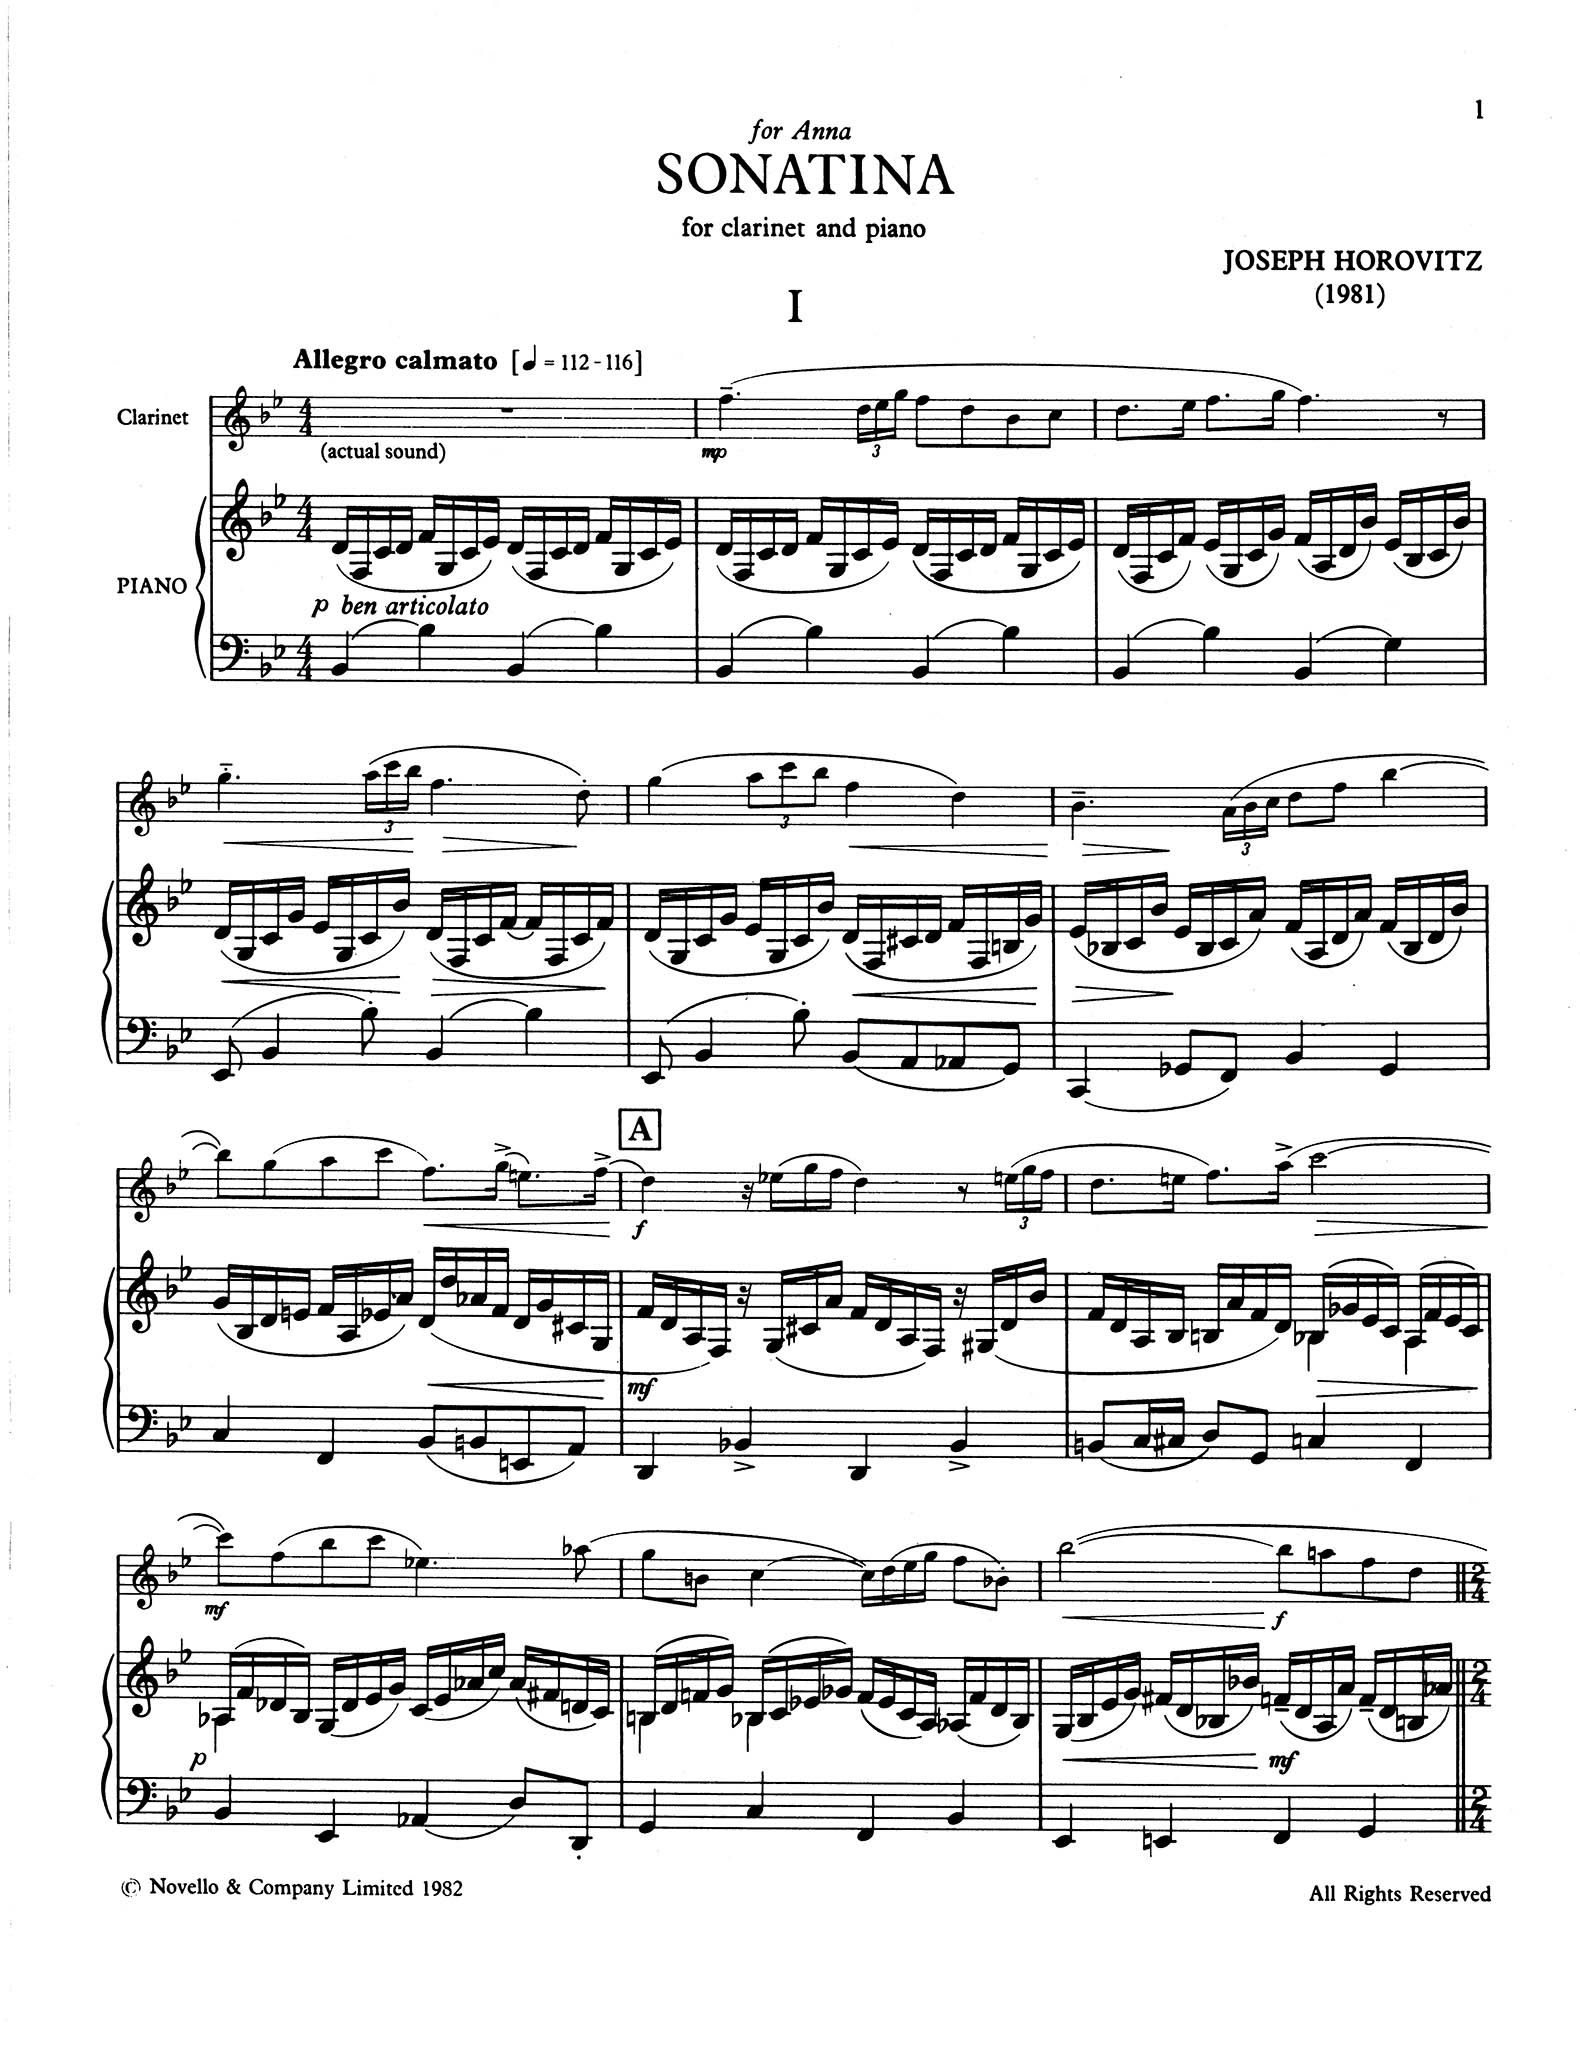 Sonatina for Clarinet & Piano - Movement 1